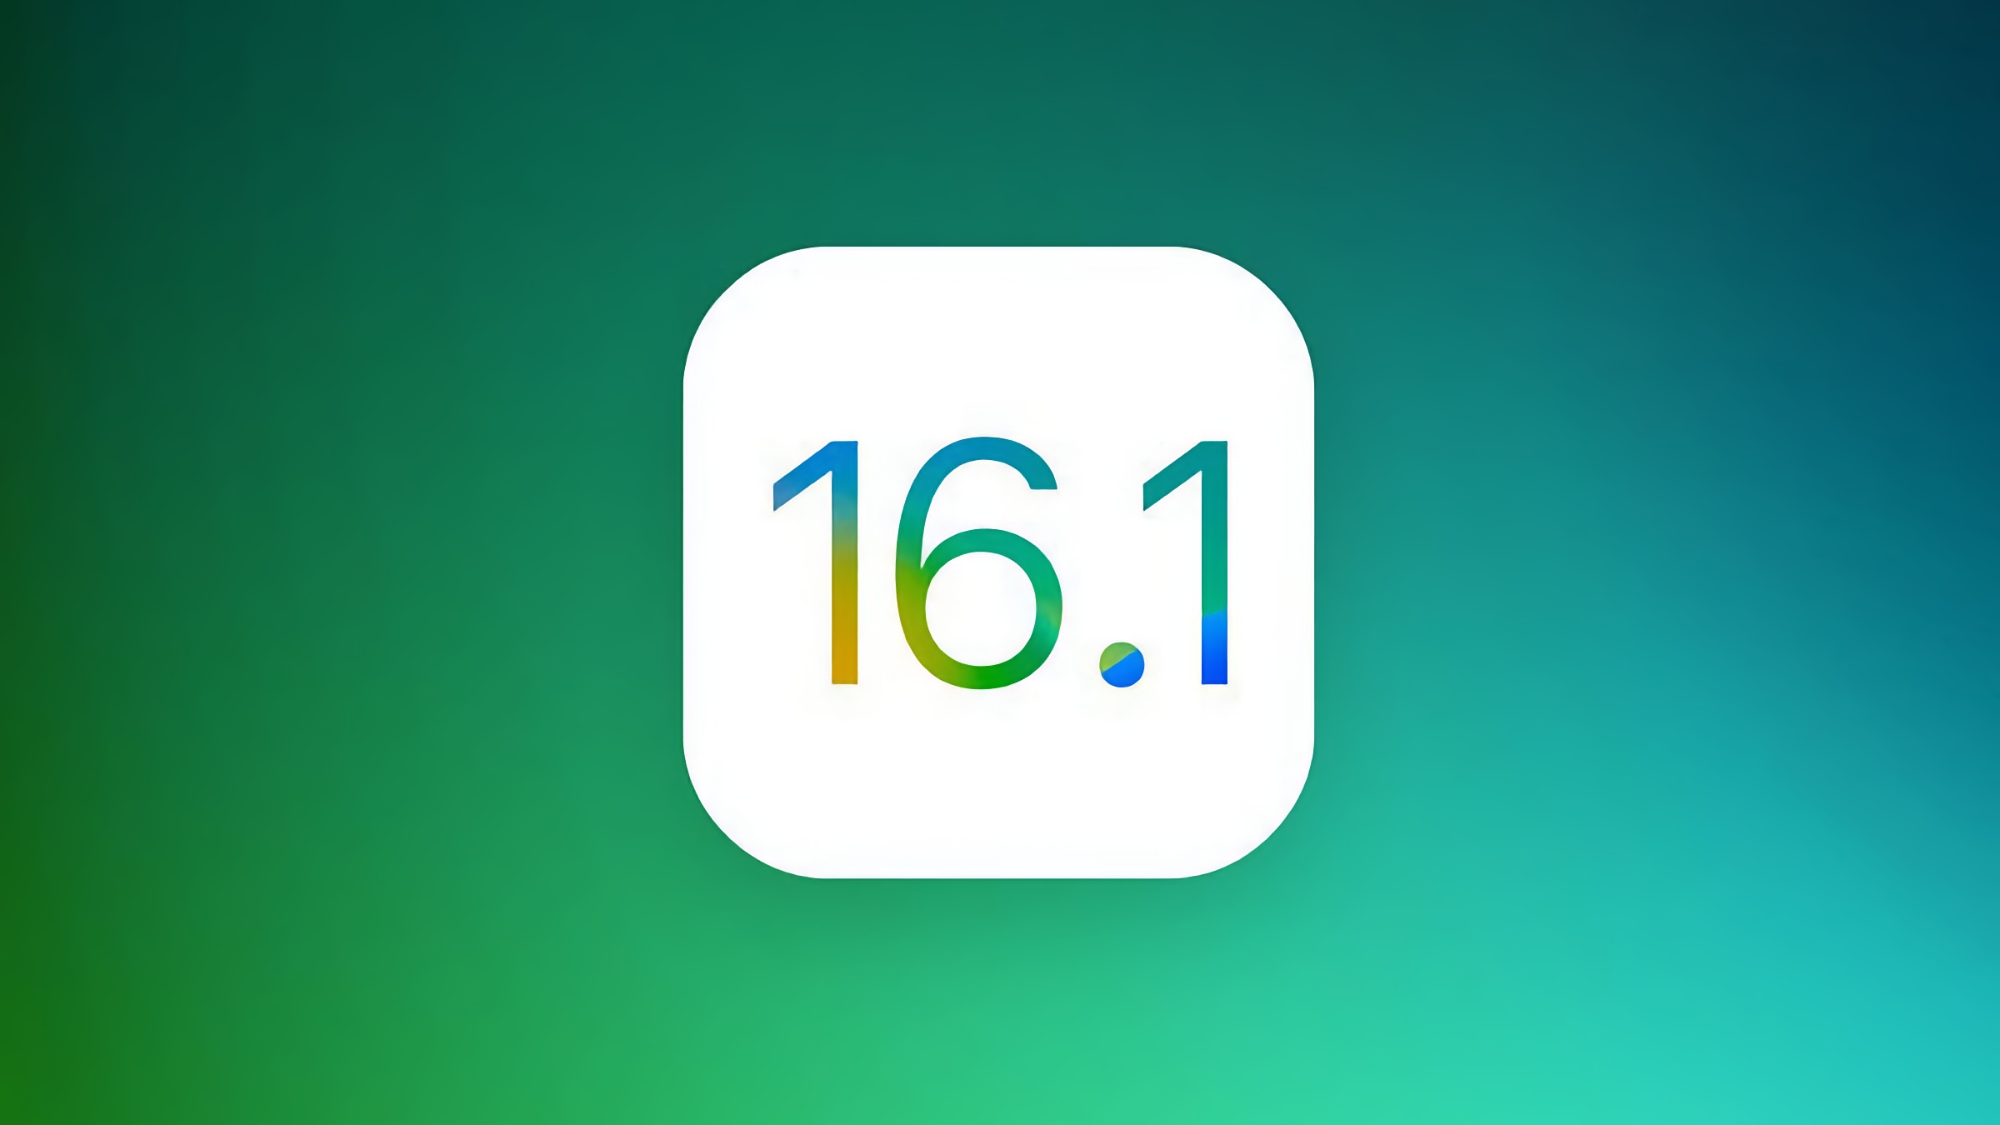 Nie tylko iPadOS 16.1 i macOS Ventura: Apple wprowadzi kolejną stabilną wersję iOS 16.1 już 24 października